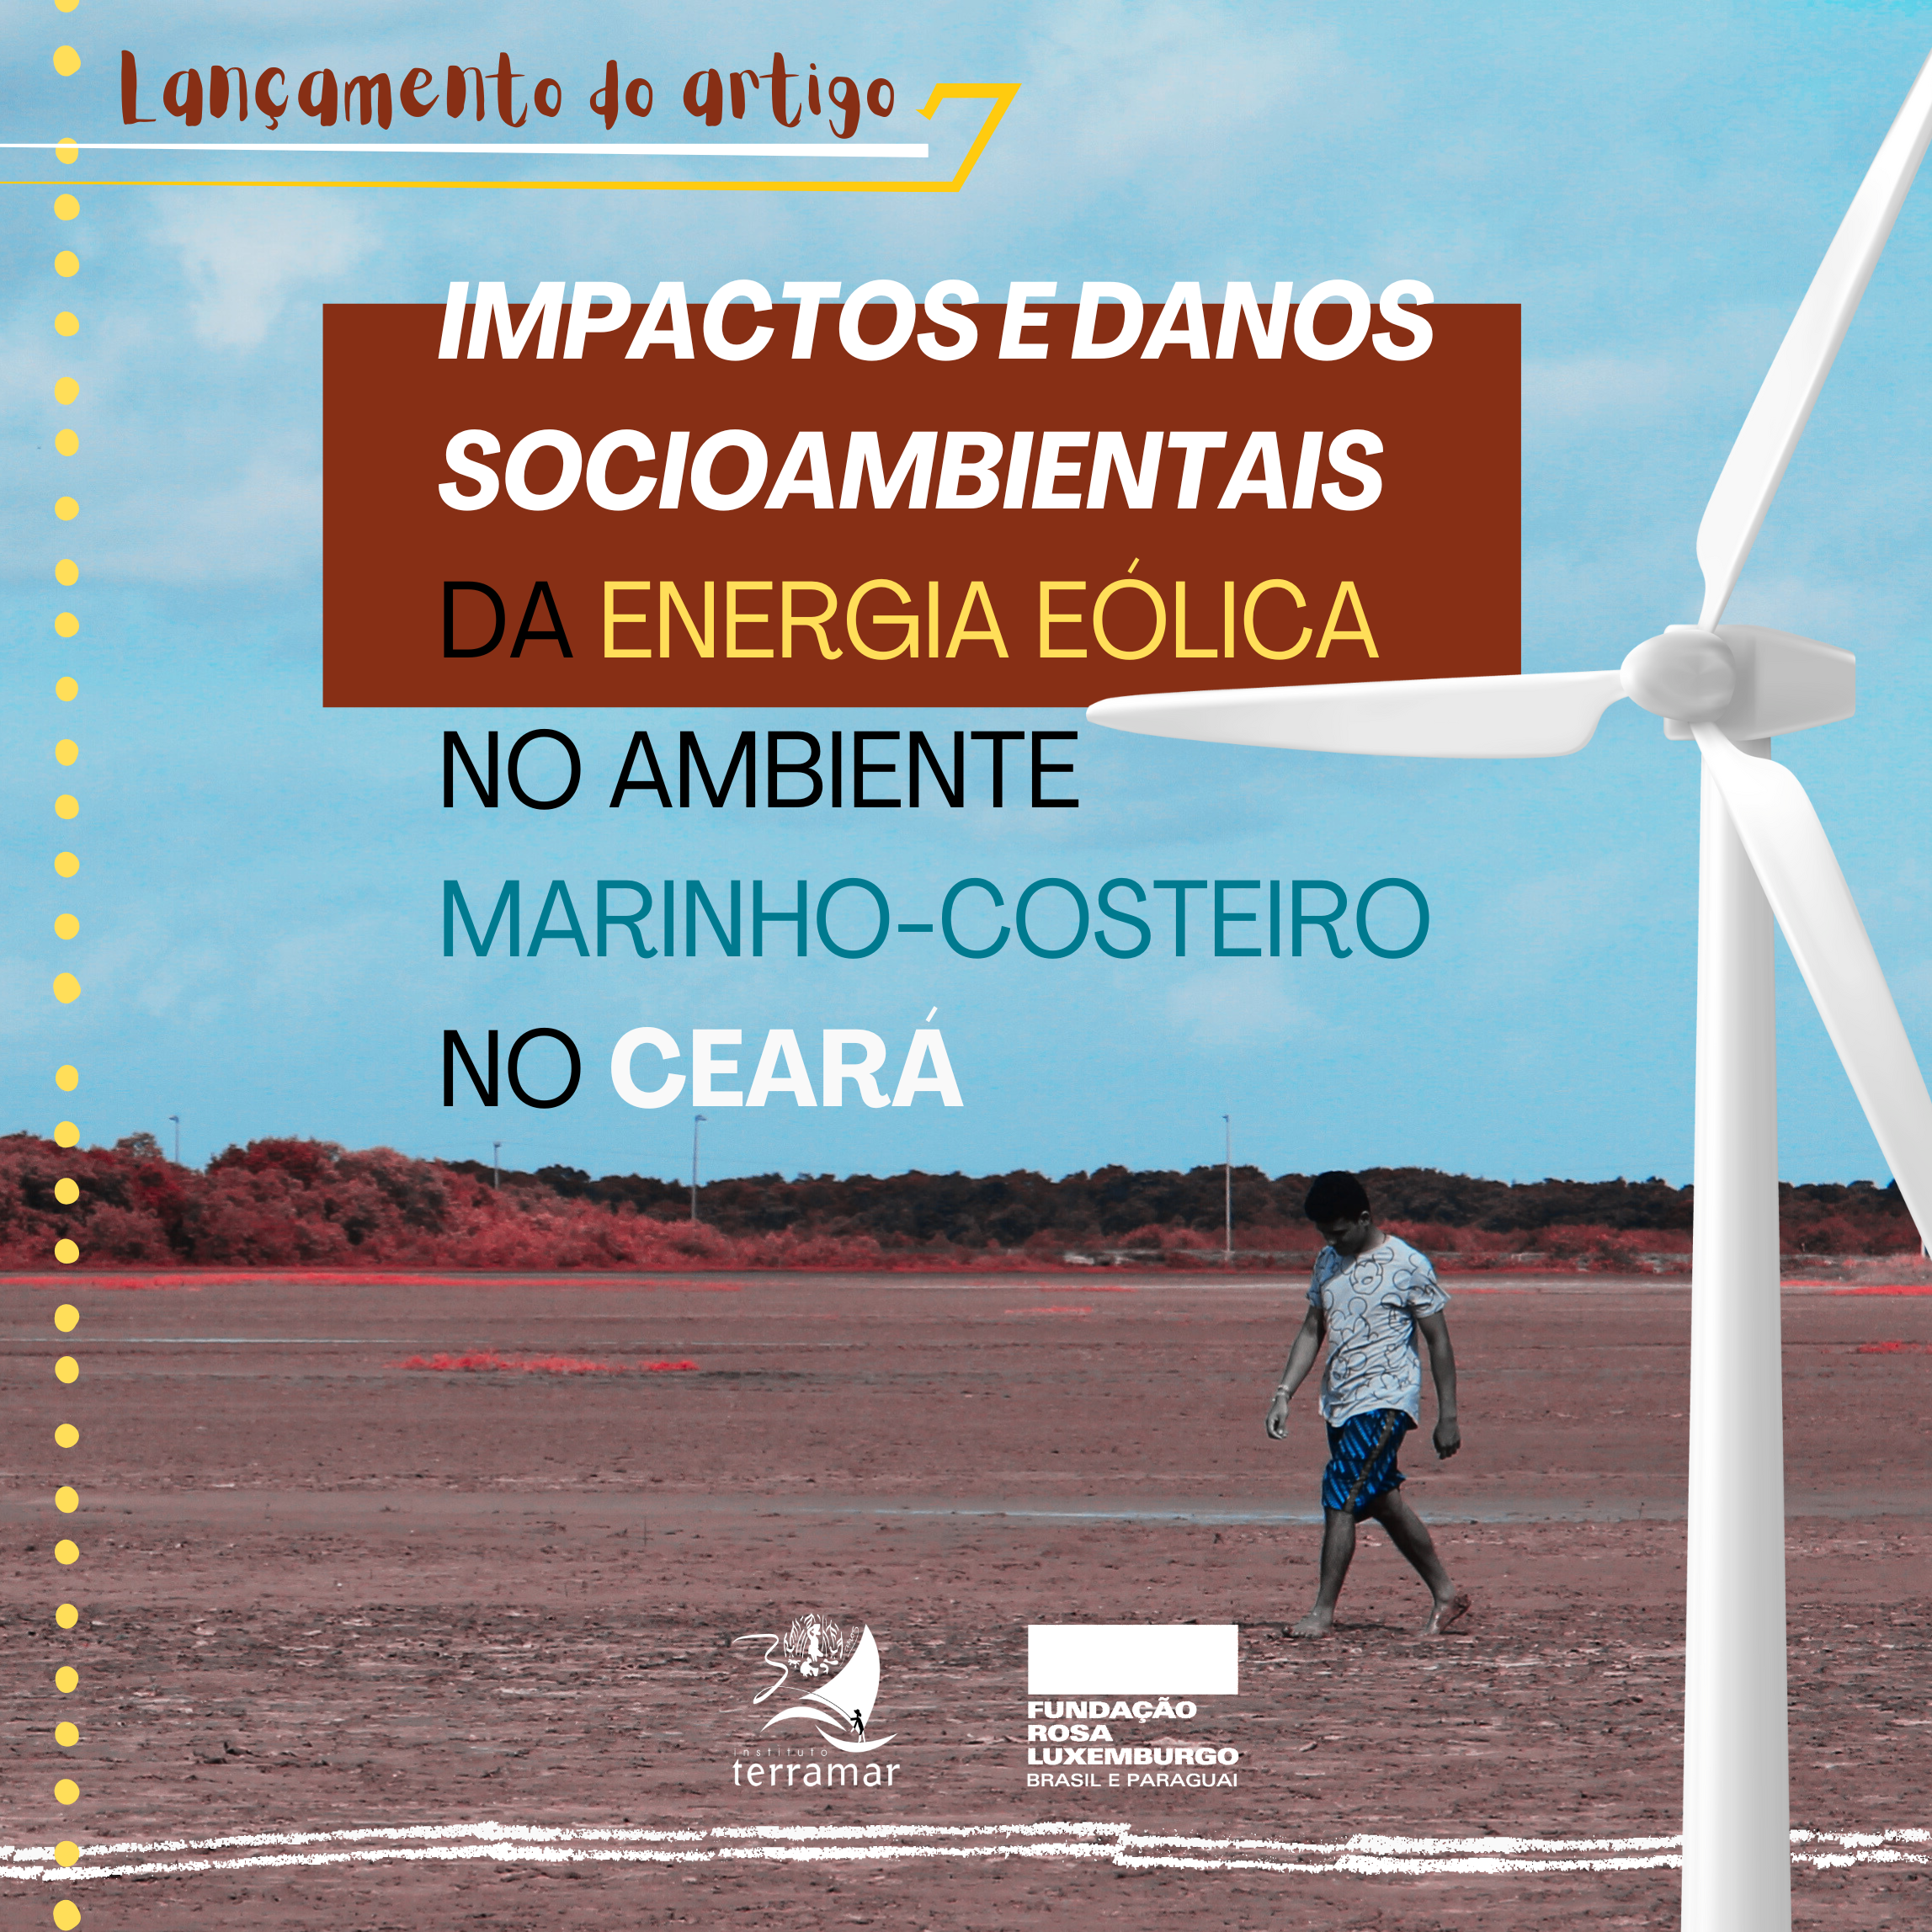 IMPACTOS-E-DANOS-SOCIOAMBIENTAIS-DA-ENERGIA-EOLICA-NO-AMBIENTE-MARINHO-COSTEIRO-NO-CEARA